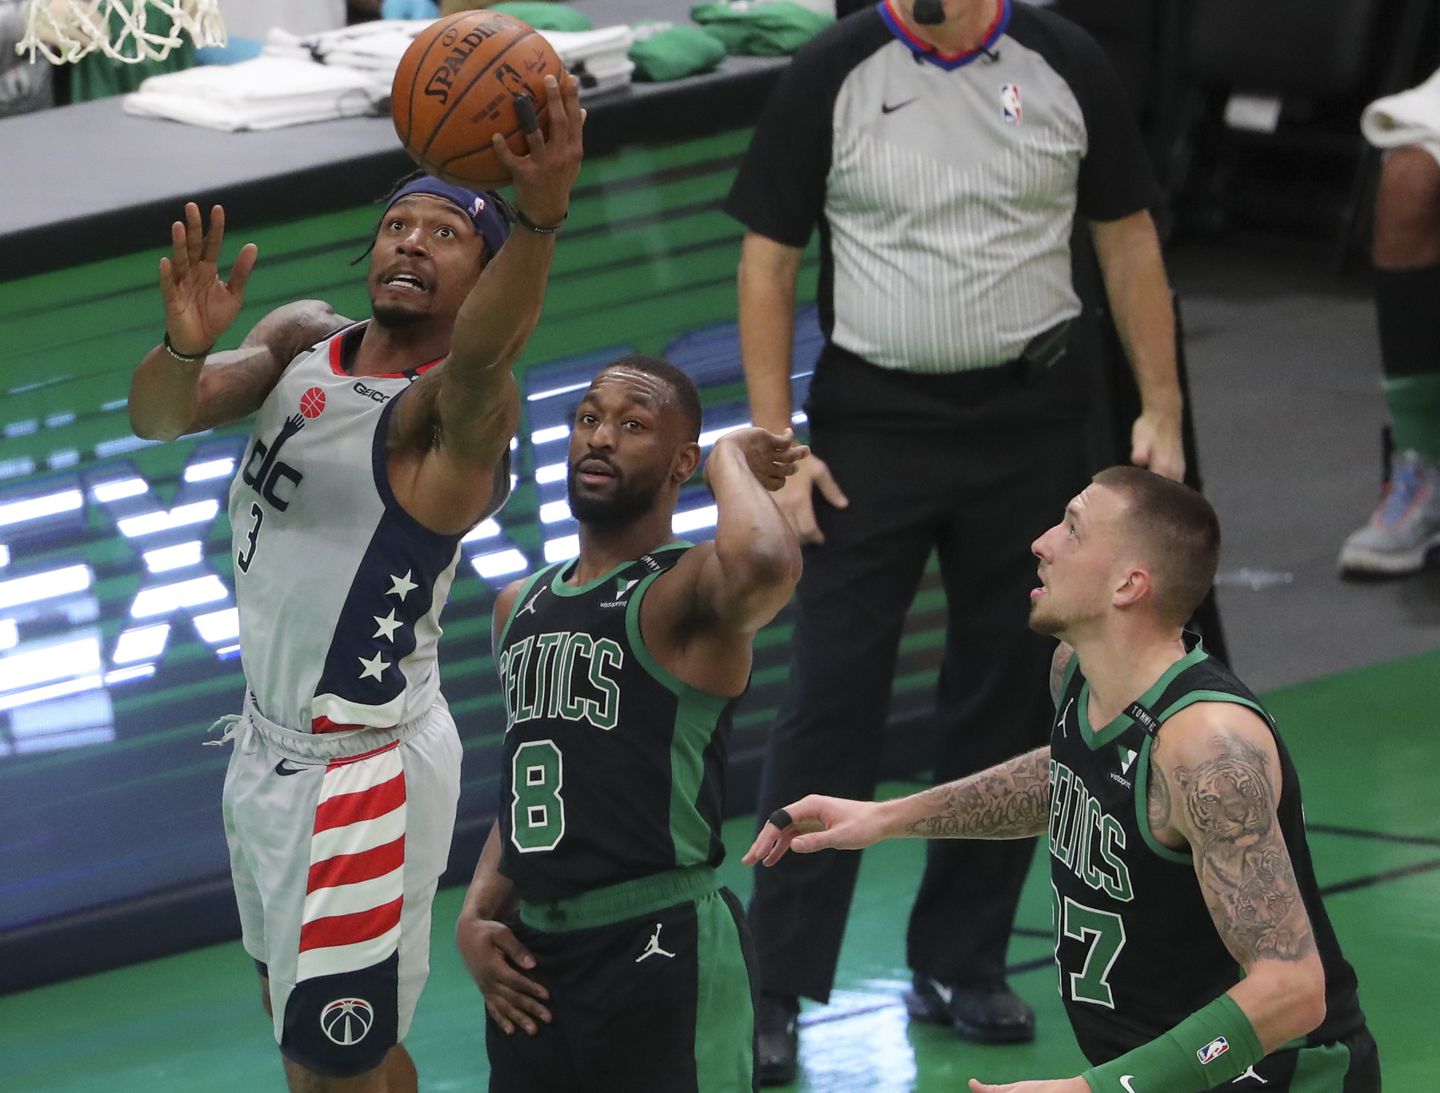 Xem trực tiếp bóng rổ NBA Play-in ngày 19/5: Boston Celtics vs Washington Wizards (8h00) - Ảnh 1